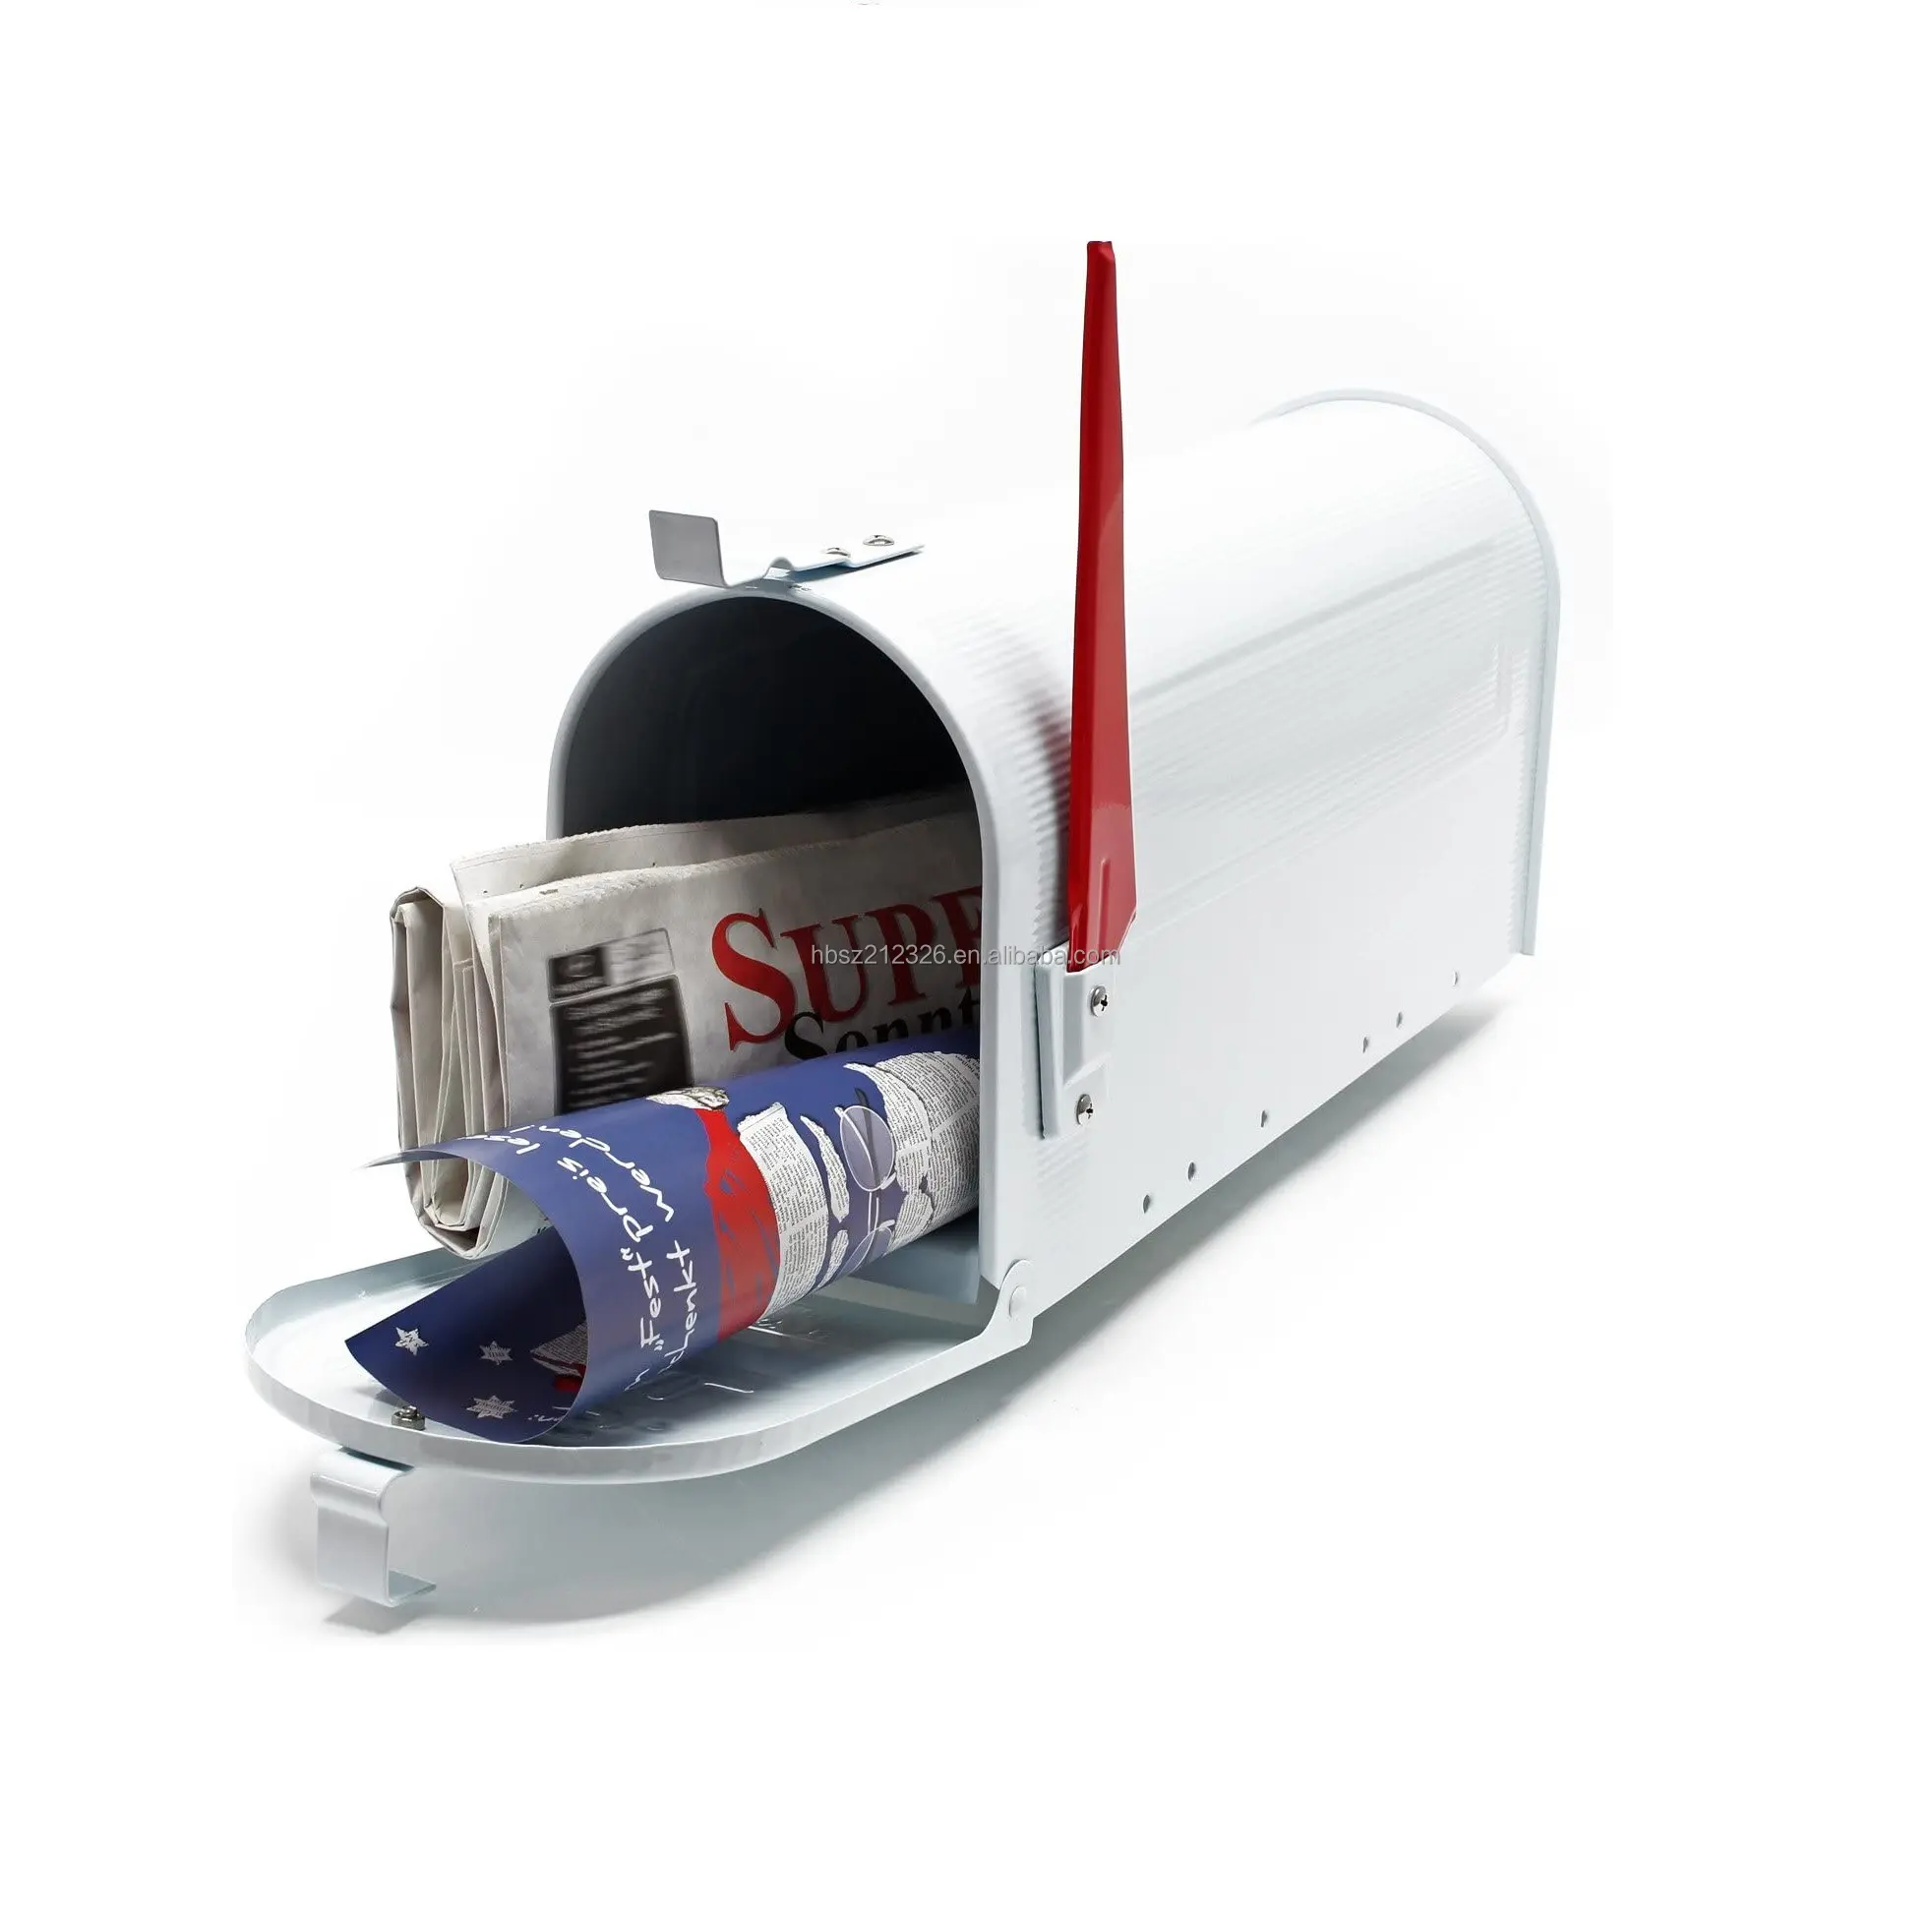 עיצוב חדש סיטונאי מסחרי מאובטח לנו תיבת דואר חבילות גדולות עם סיטונאי